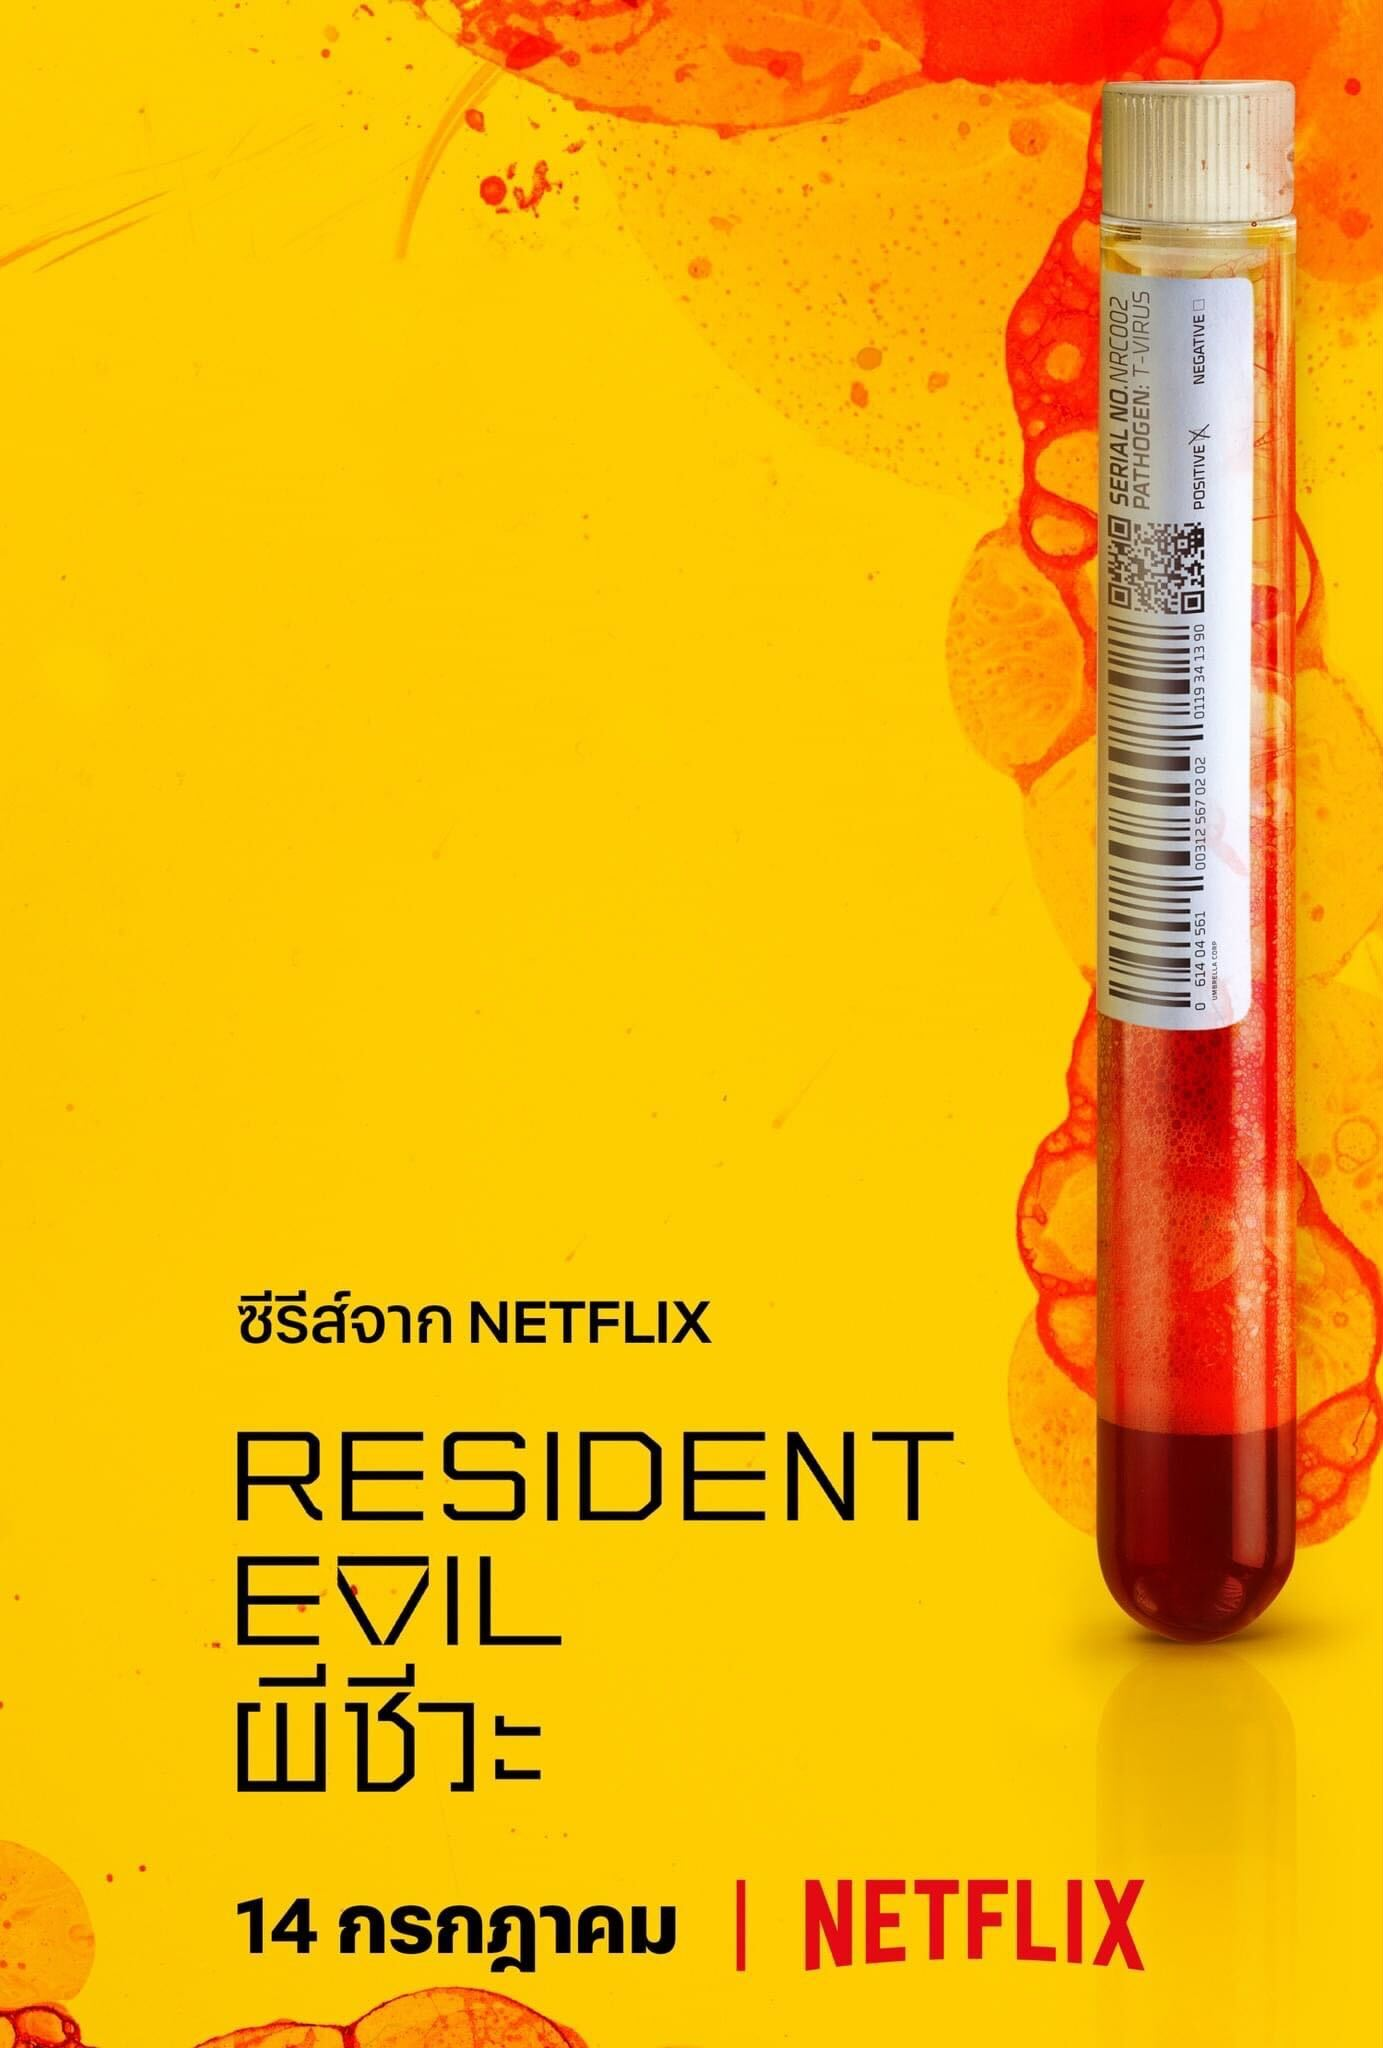 Resident Evil Netflix Poster 2